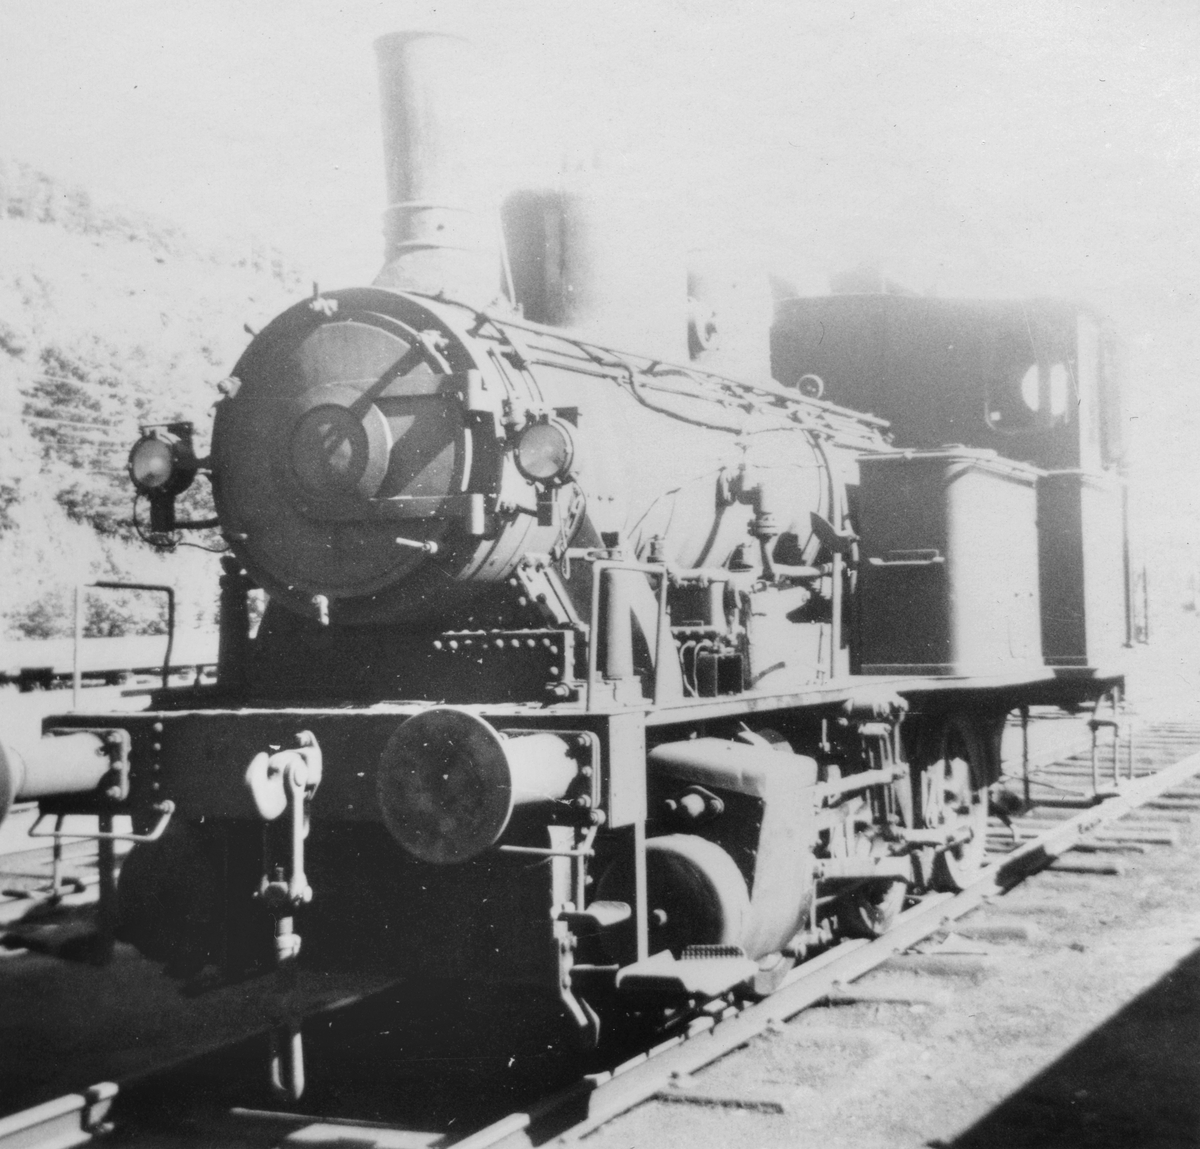 Damplokomotiv type 25a 307 hensatt på Krossen ved Kristiansand. Damplokomotiver ble erstattet av diesellokomotiver i skiftetjenesten.